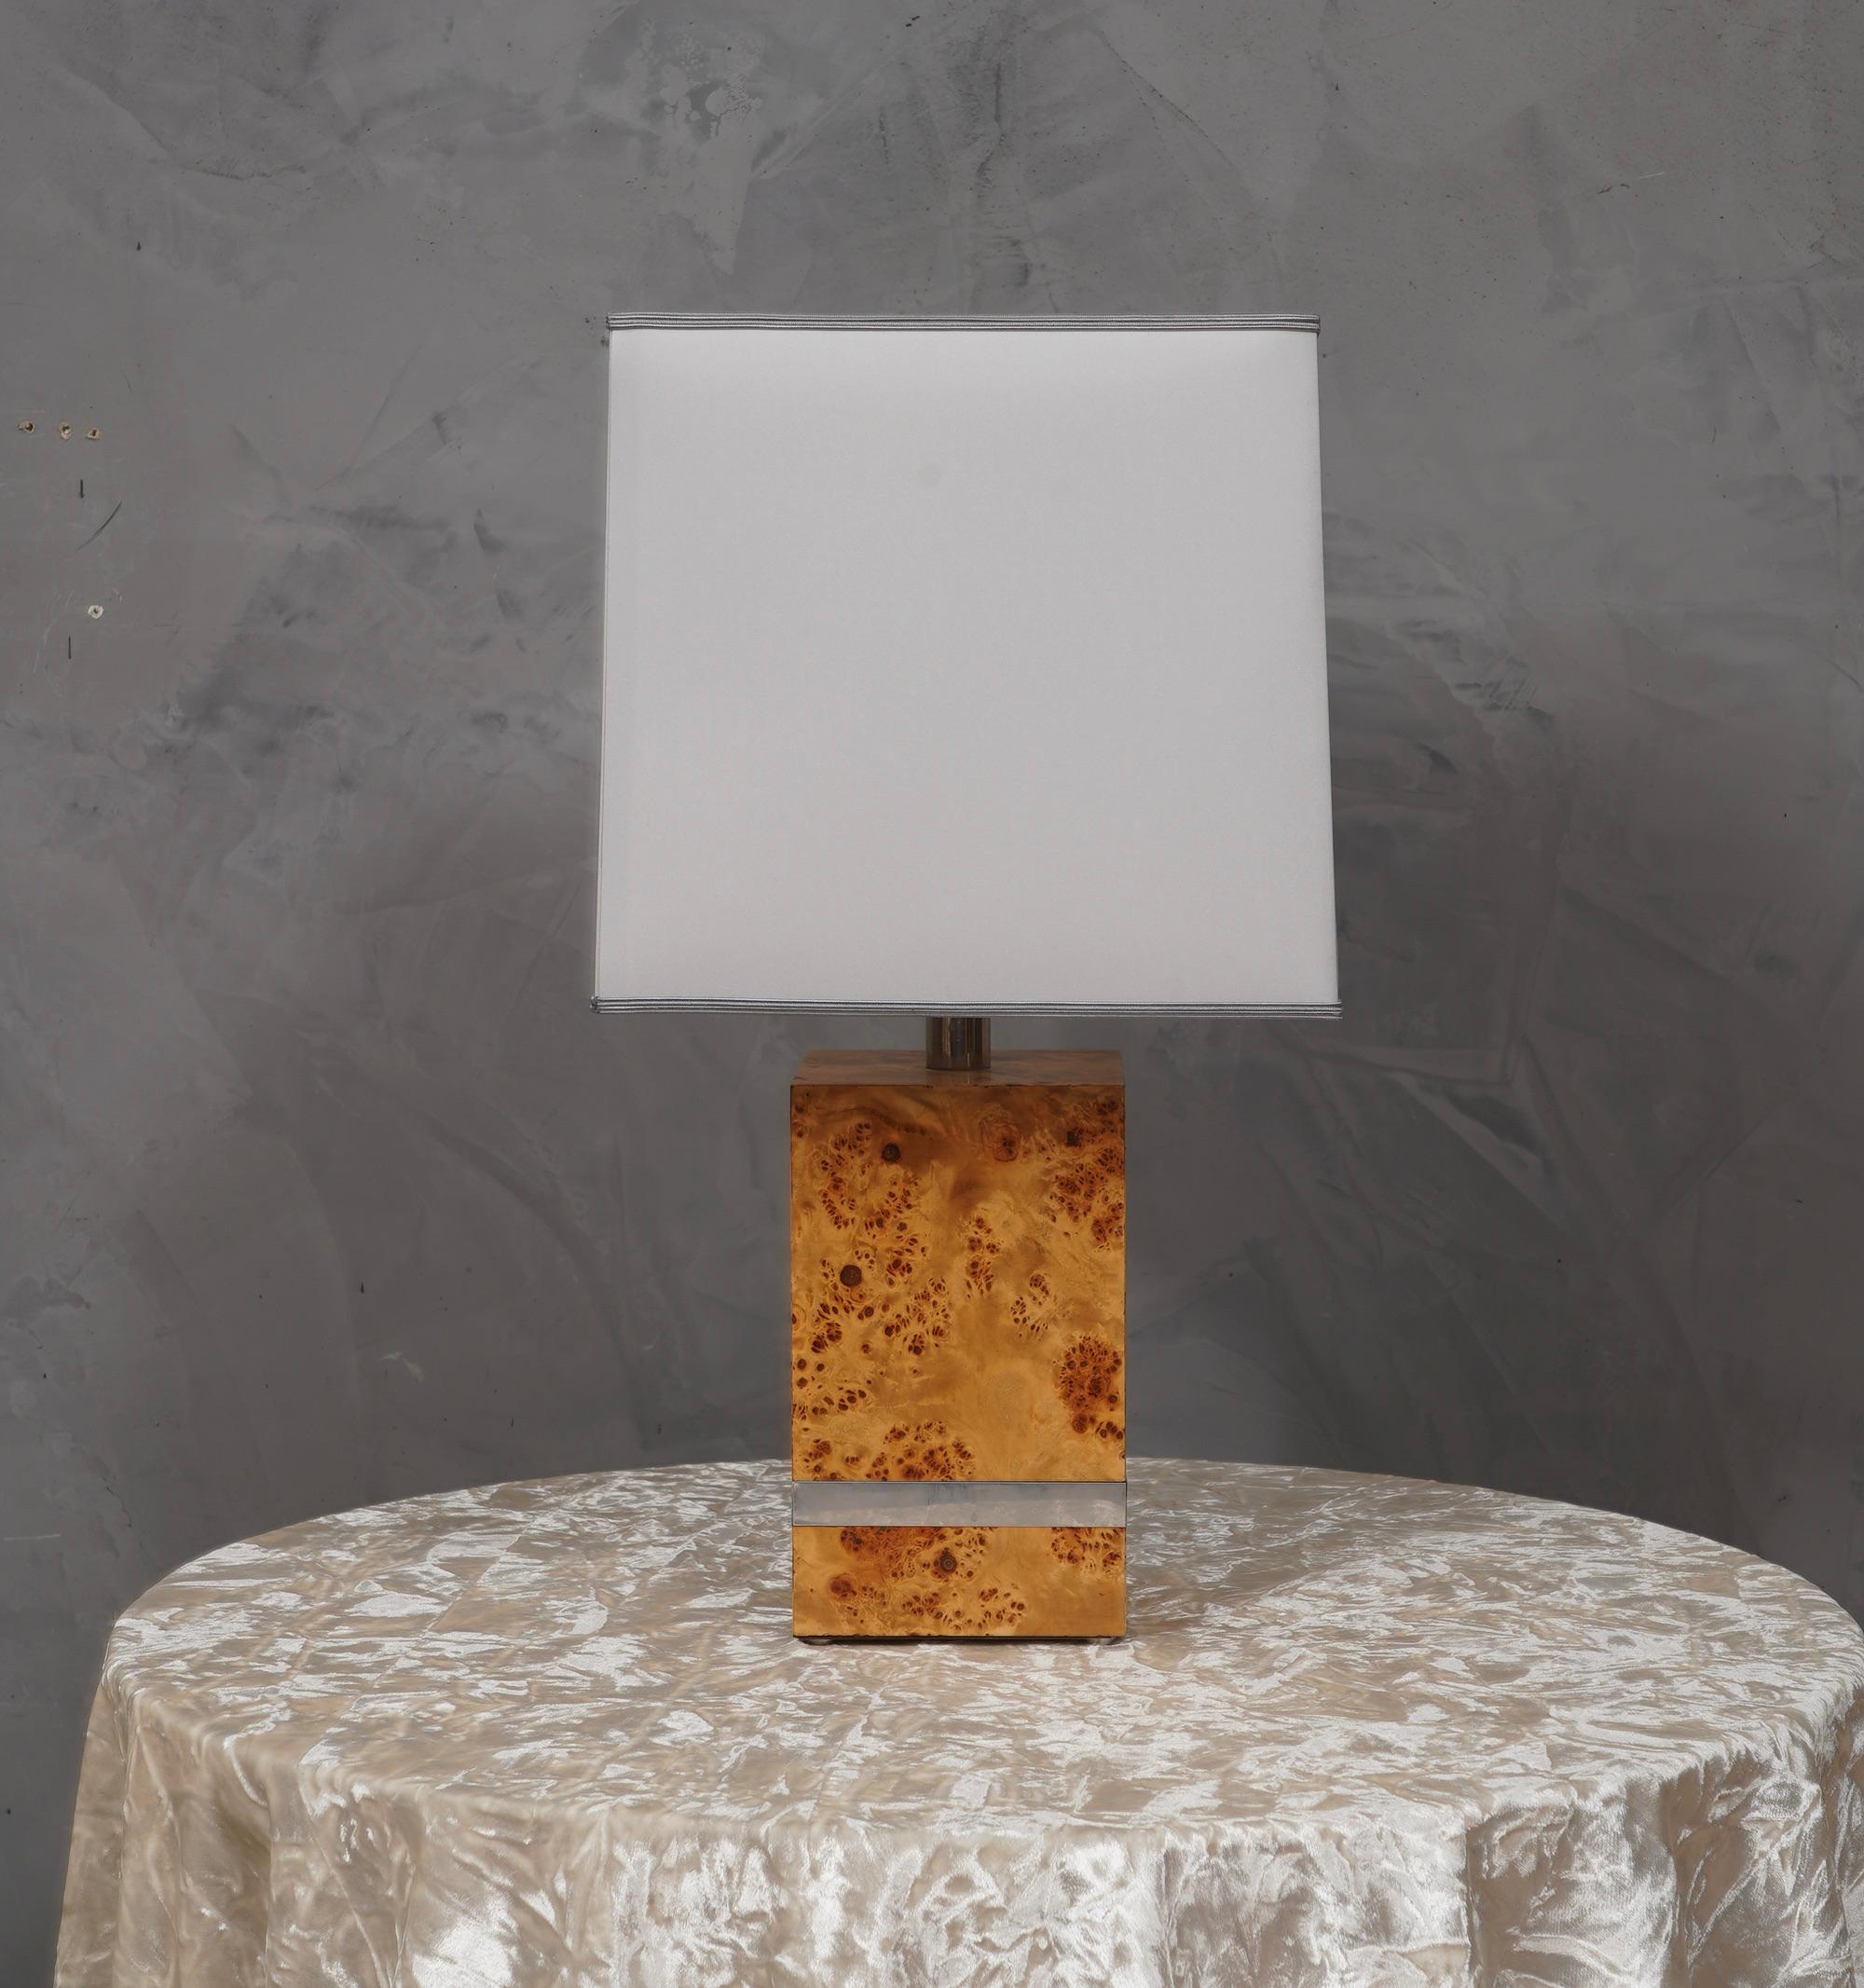 Lampe de table raffinée et particulière de Tommaso Barbi, épurée dans son style, la lampe de table est pleine de matériaux précieux et distinctifs.

La lampe de table a une forme carrée et est fabriquée en bois plaqué de peuplier. Dans la partie